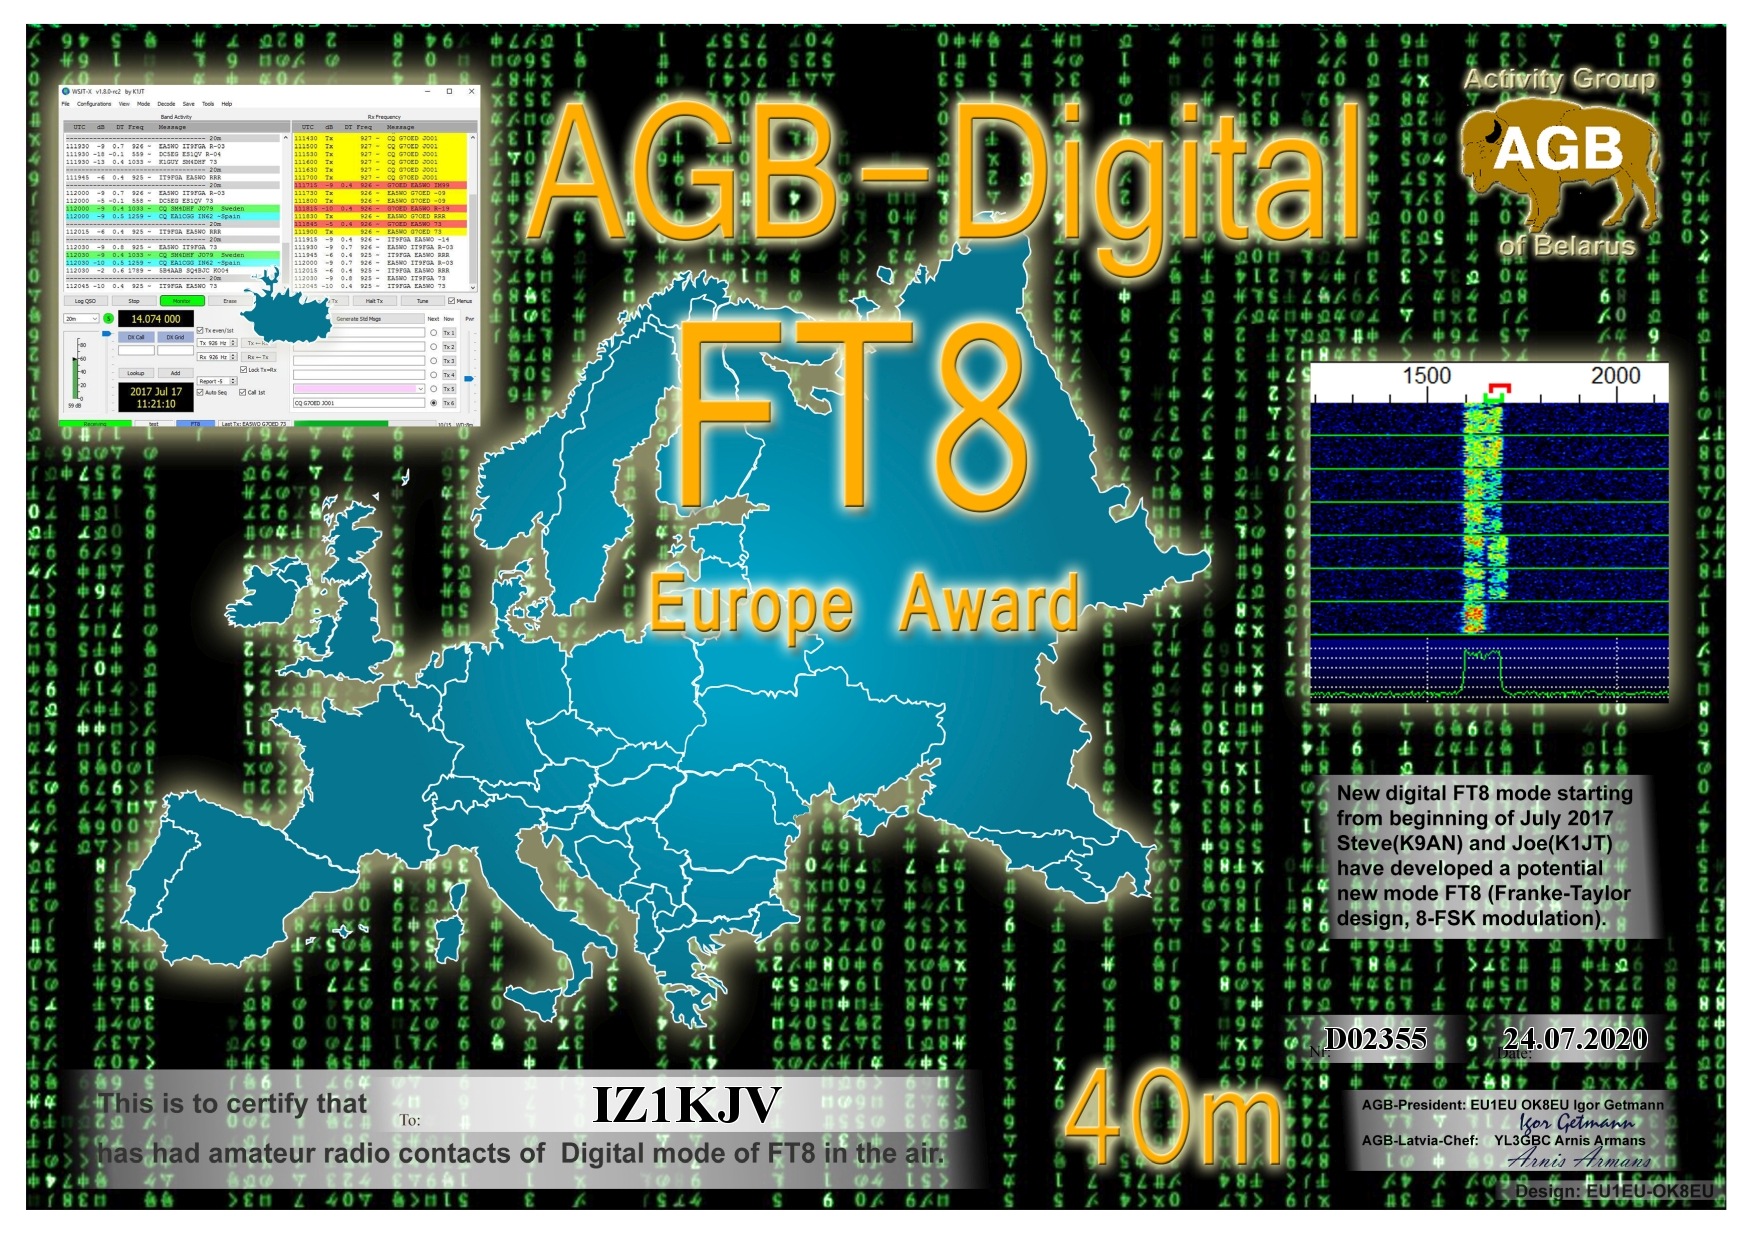 IZ1KJV-FT8_EUROPE-40M_AGB